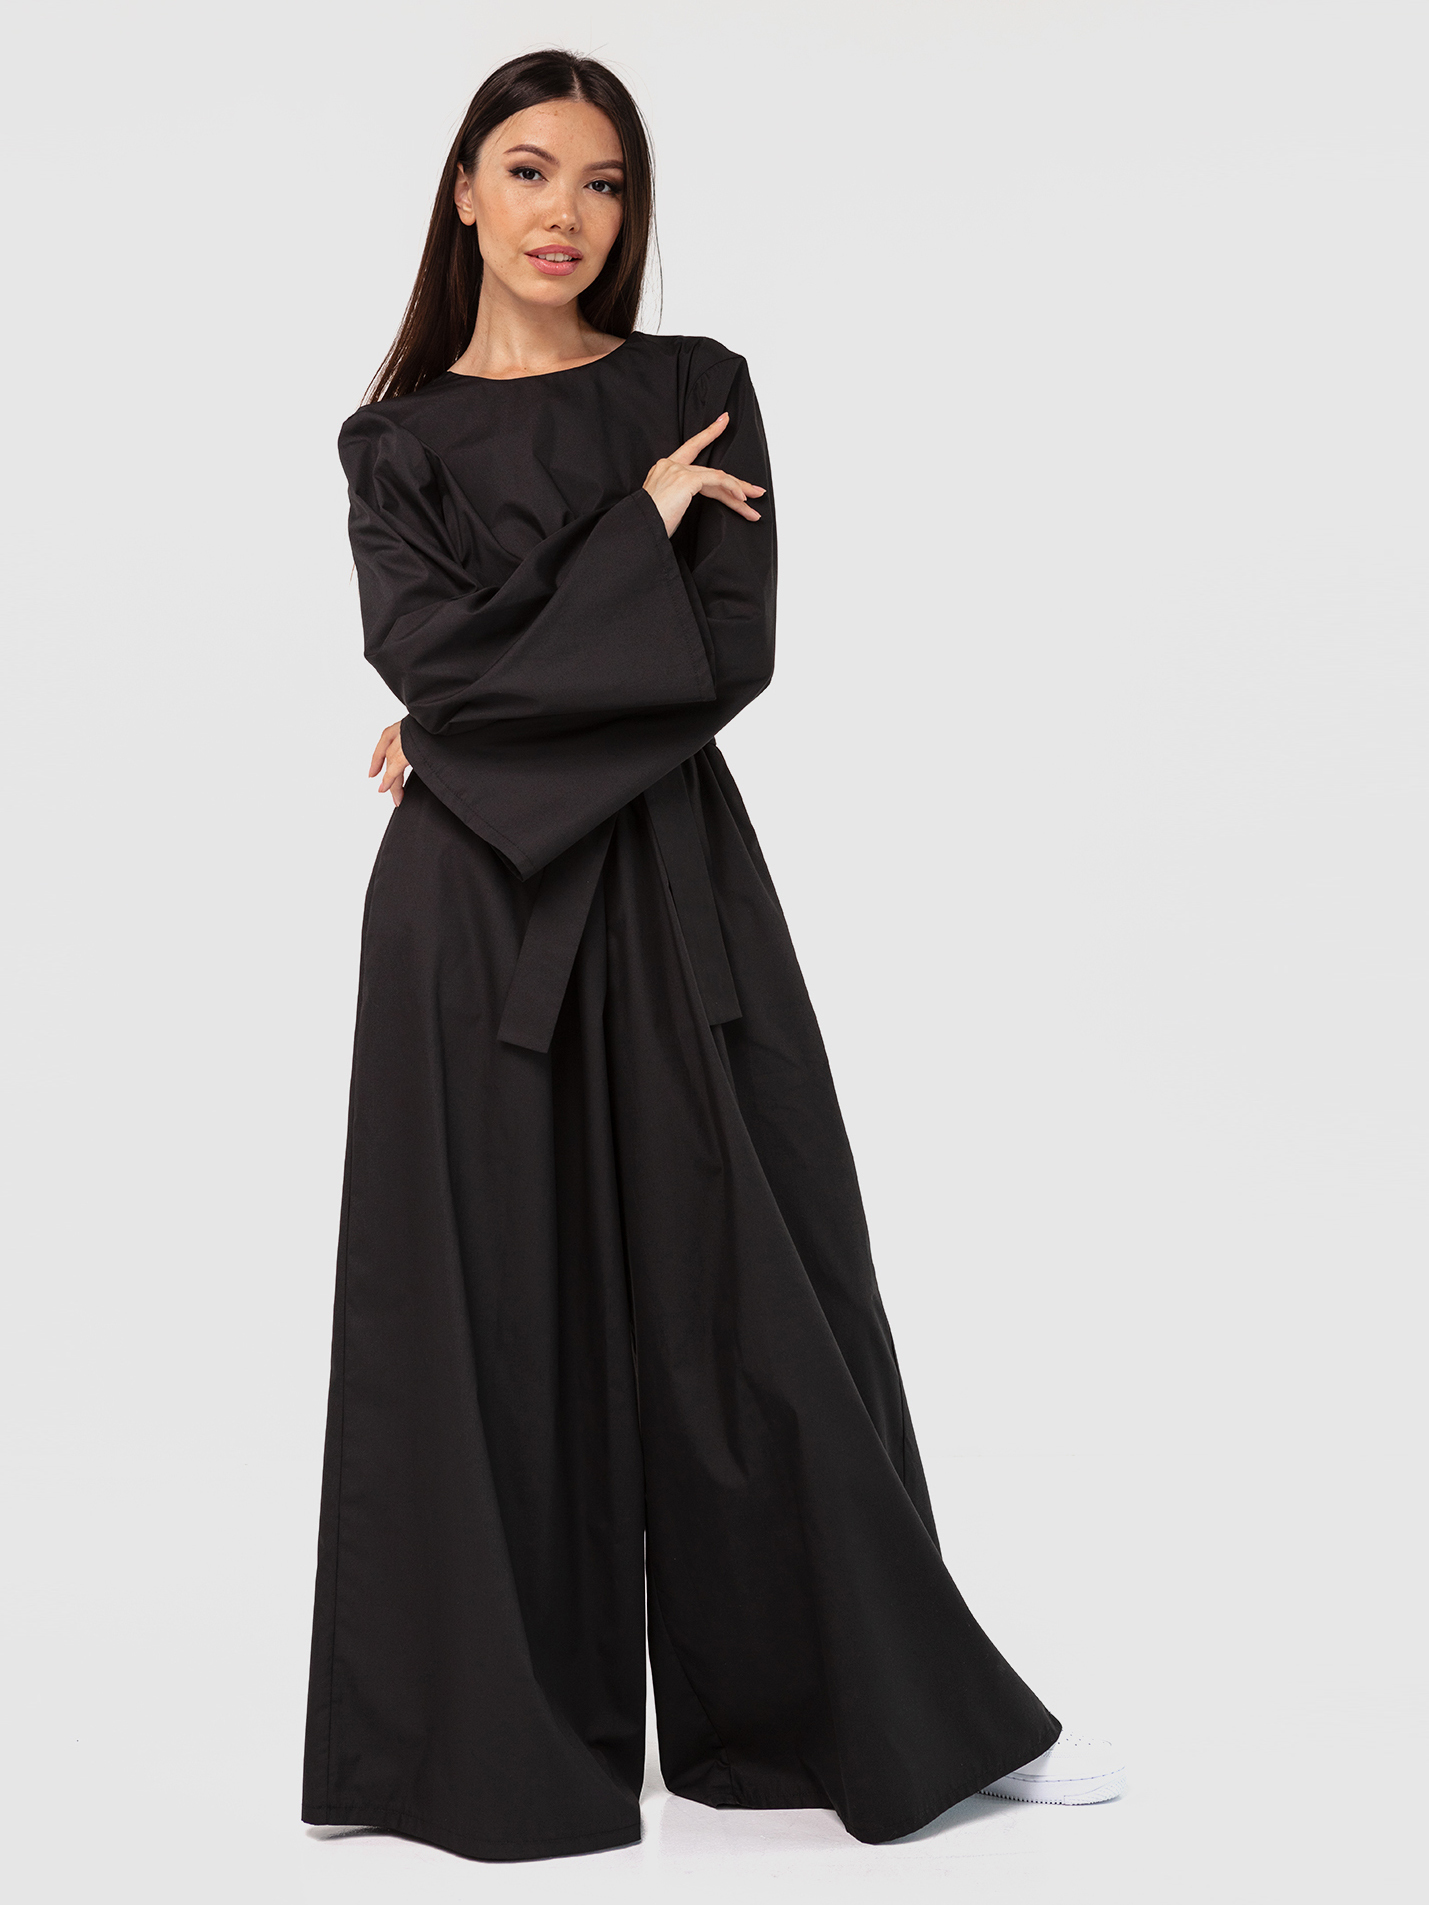 Комбинезон черный с открытой спинкой YOS от украинского бренда Your Own Style